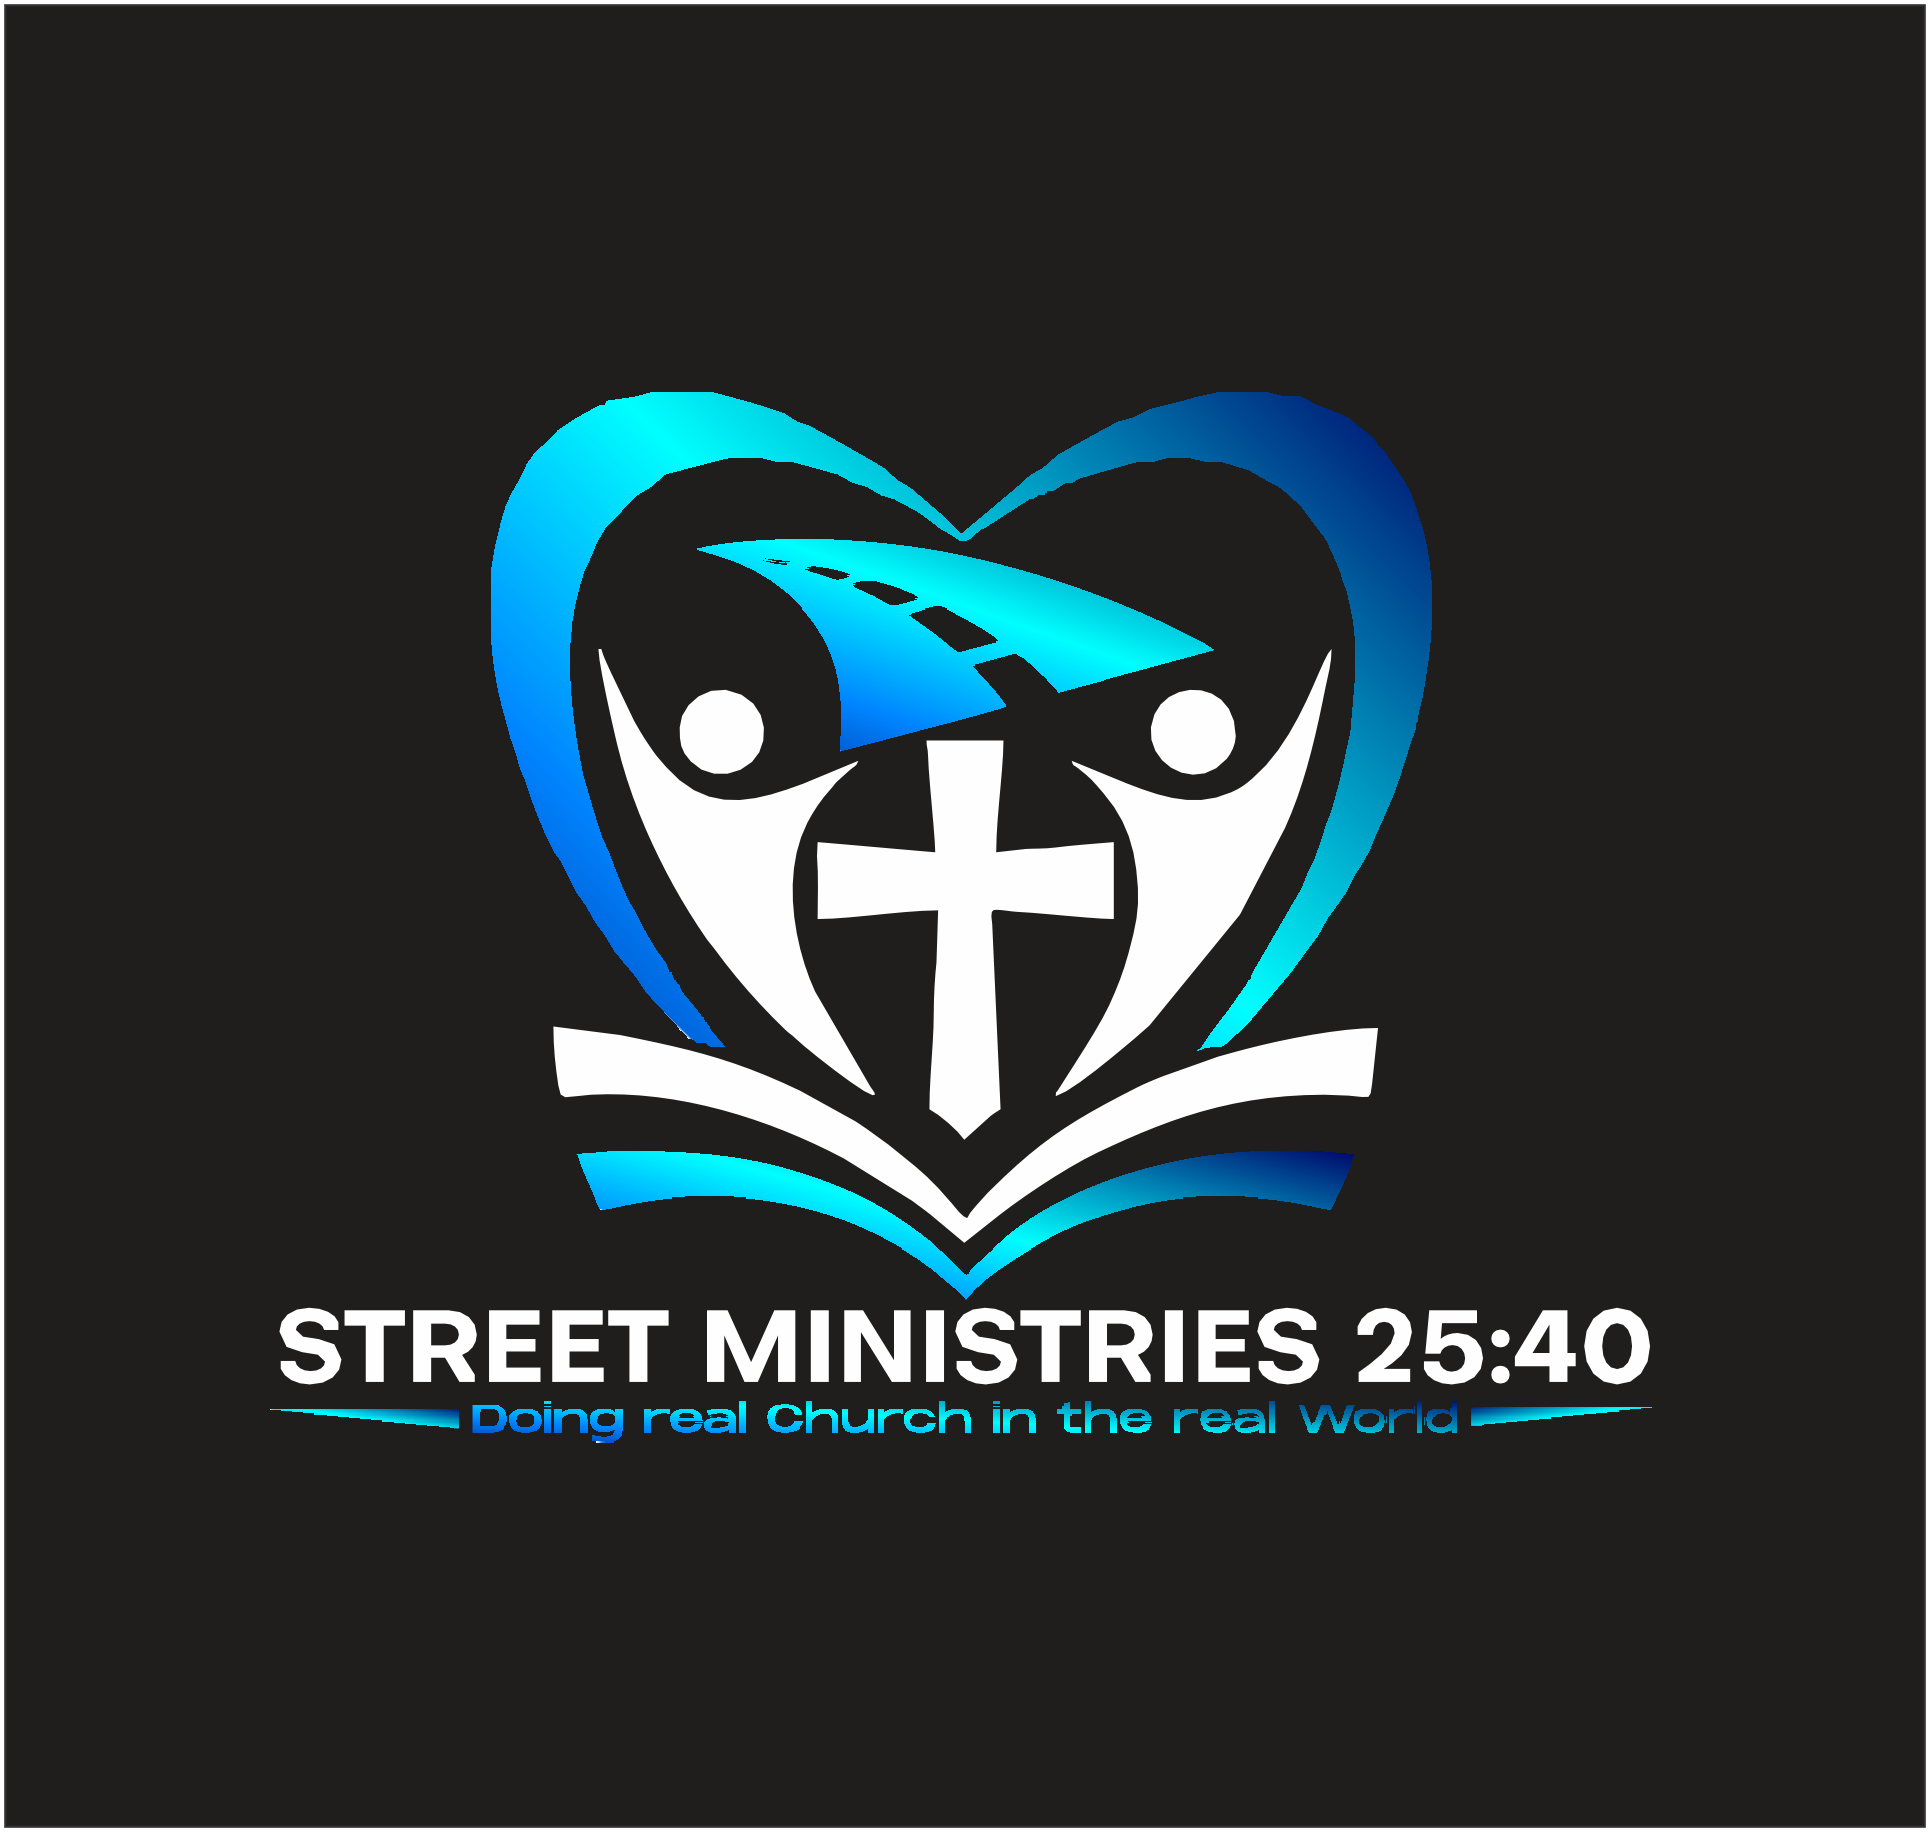 Street Ministries 25:40